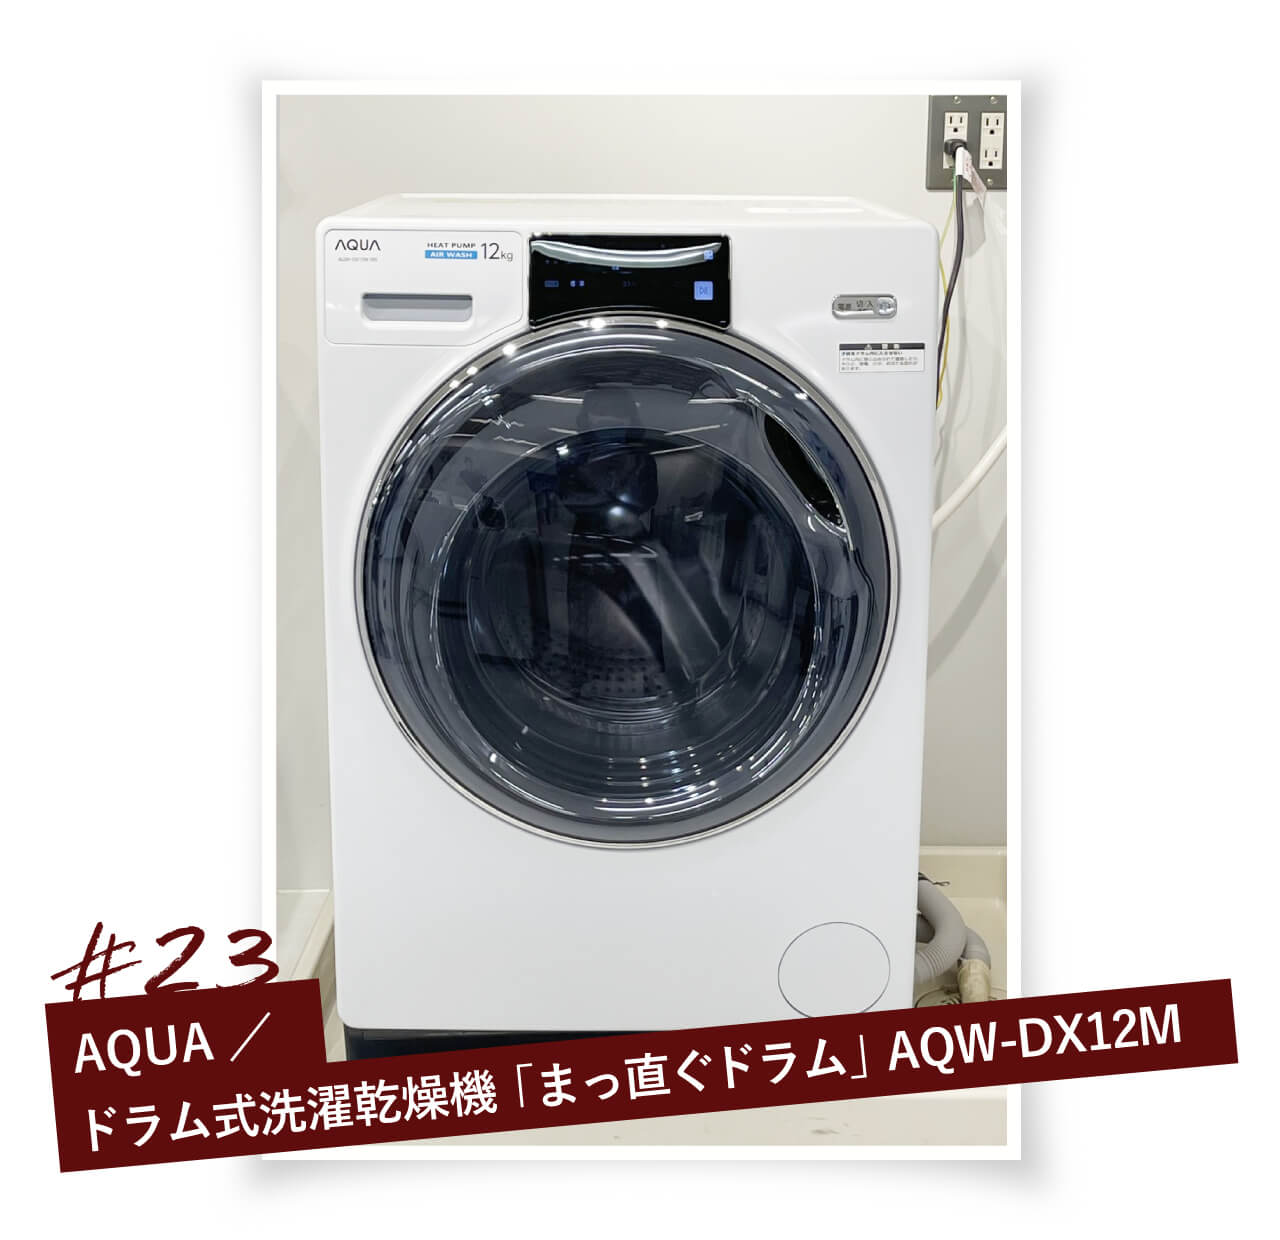 3ヶ月保証 消毒剤 2022年 アクア AQW-DX12M ドラム式洗濯乾燥機-